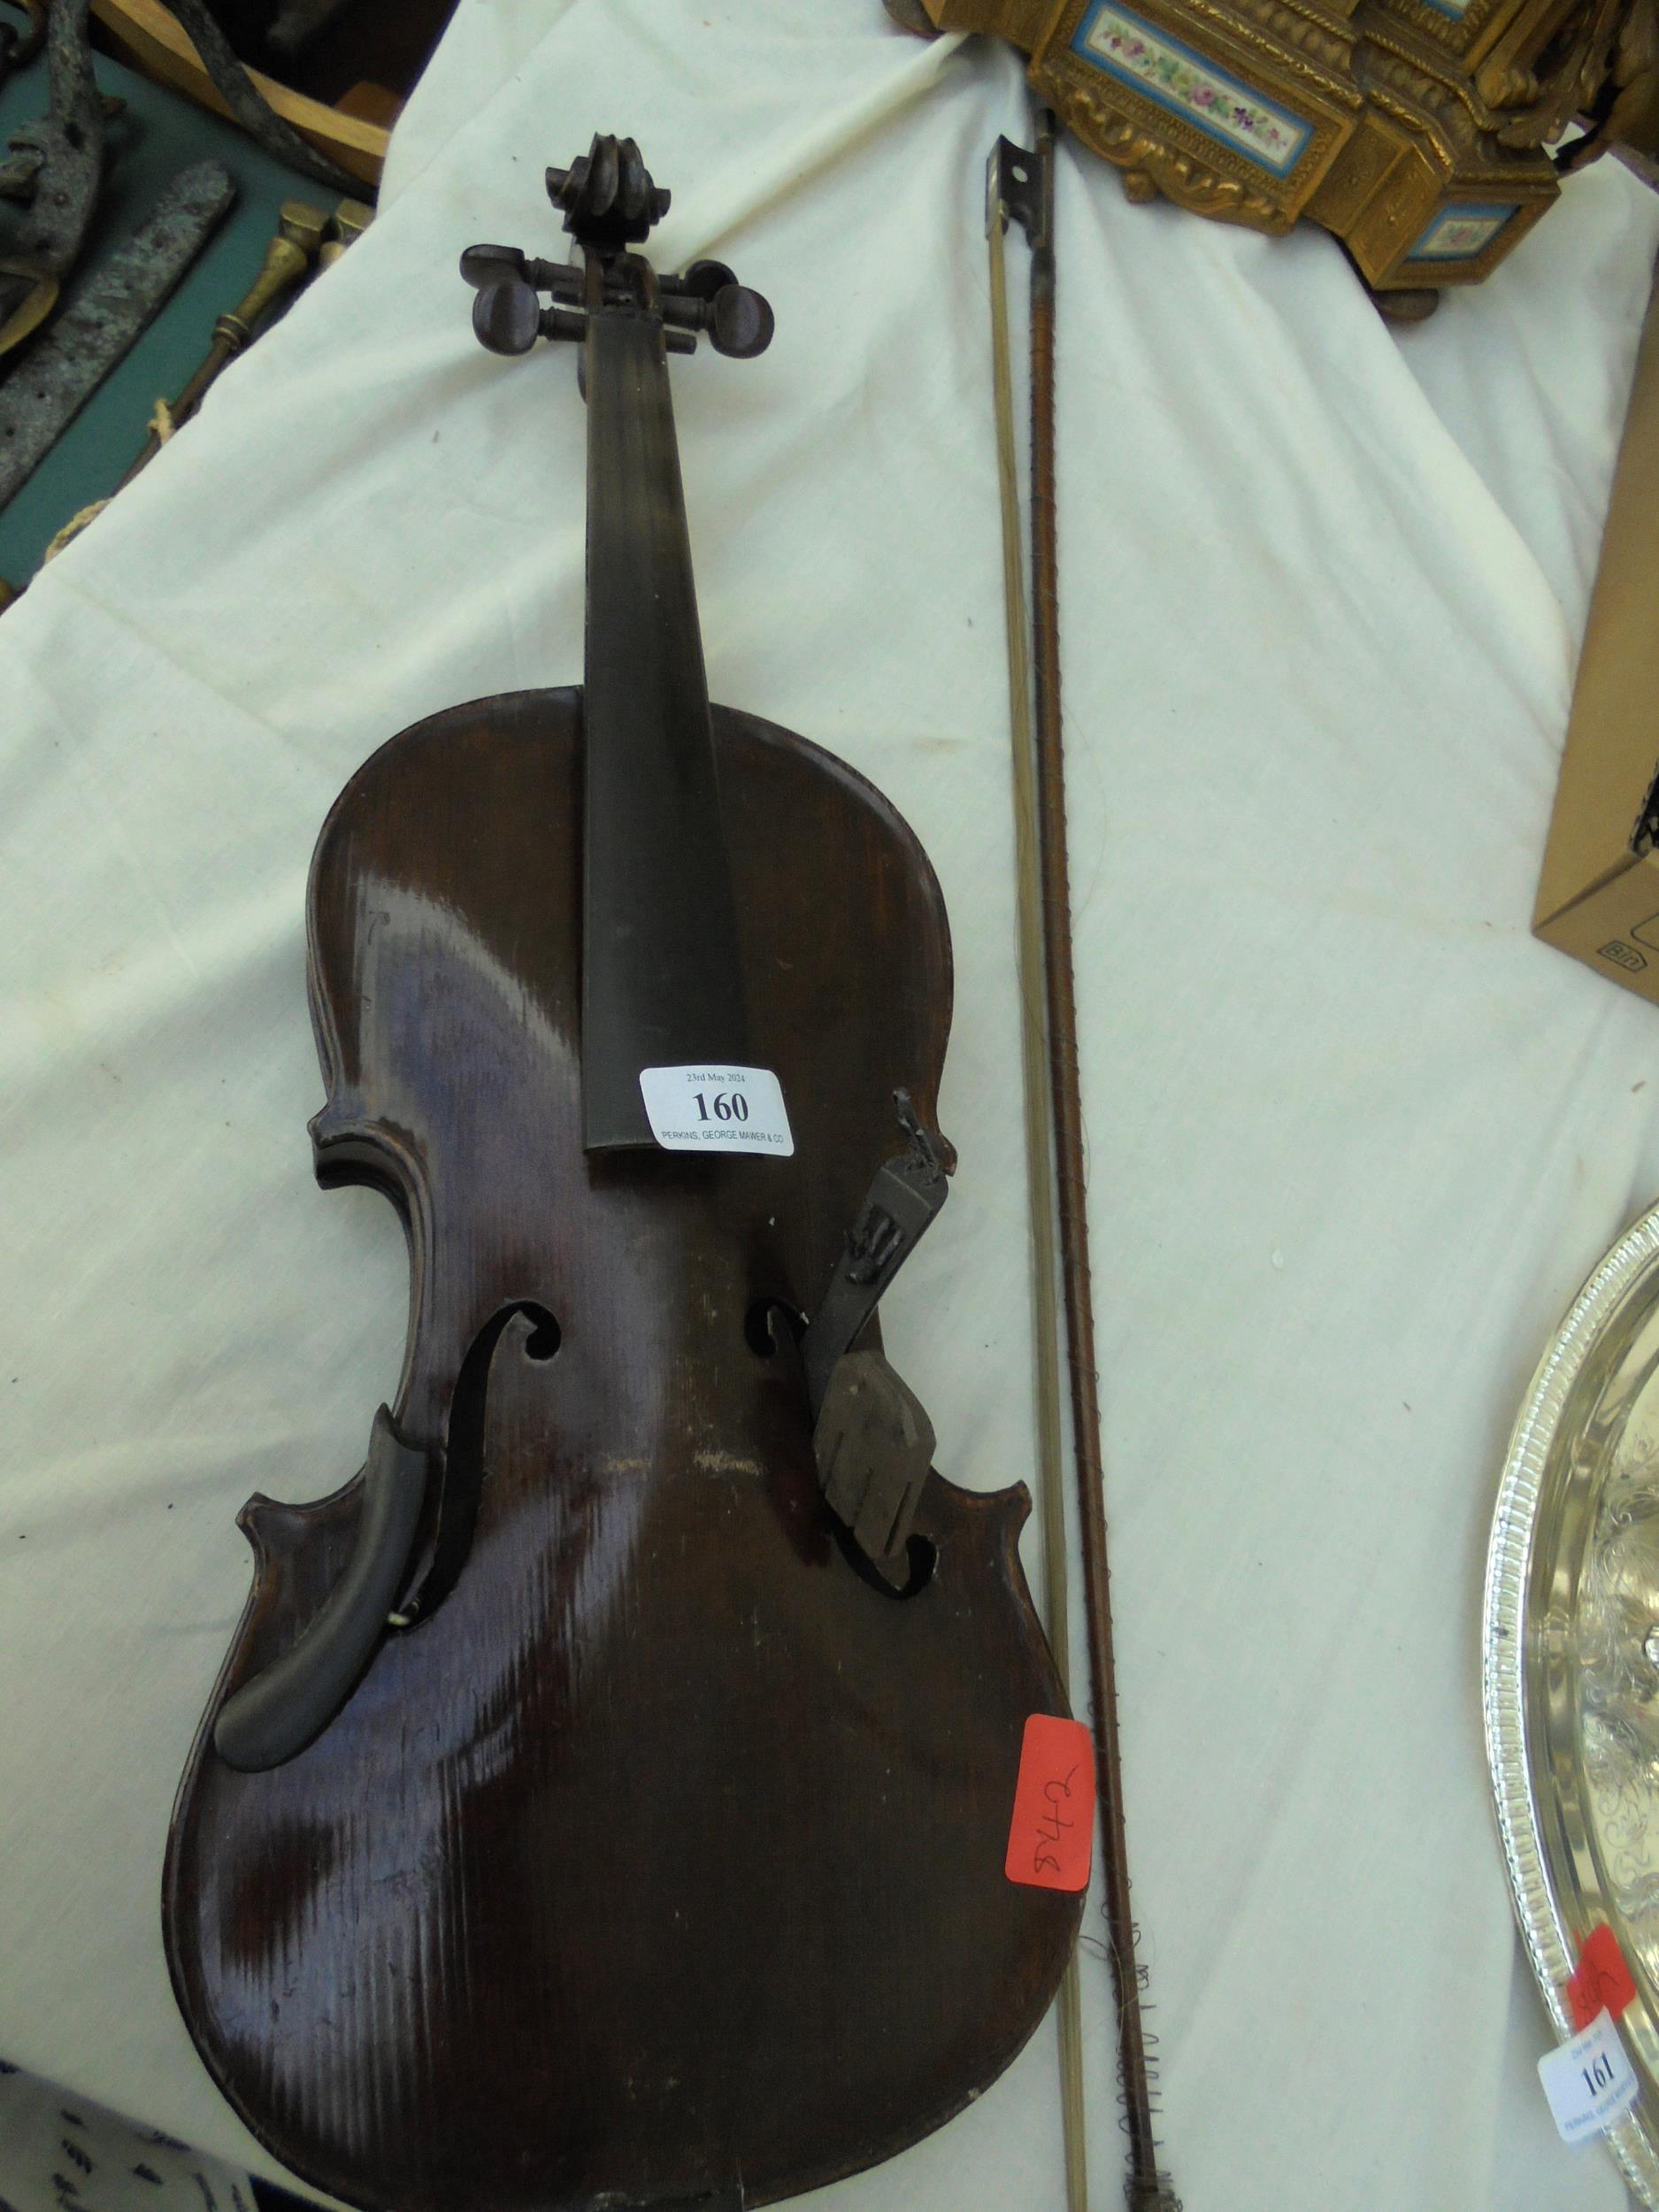 Unnamed violin for repair